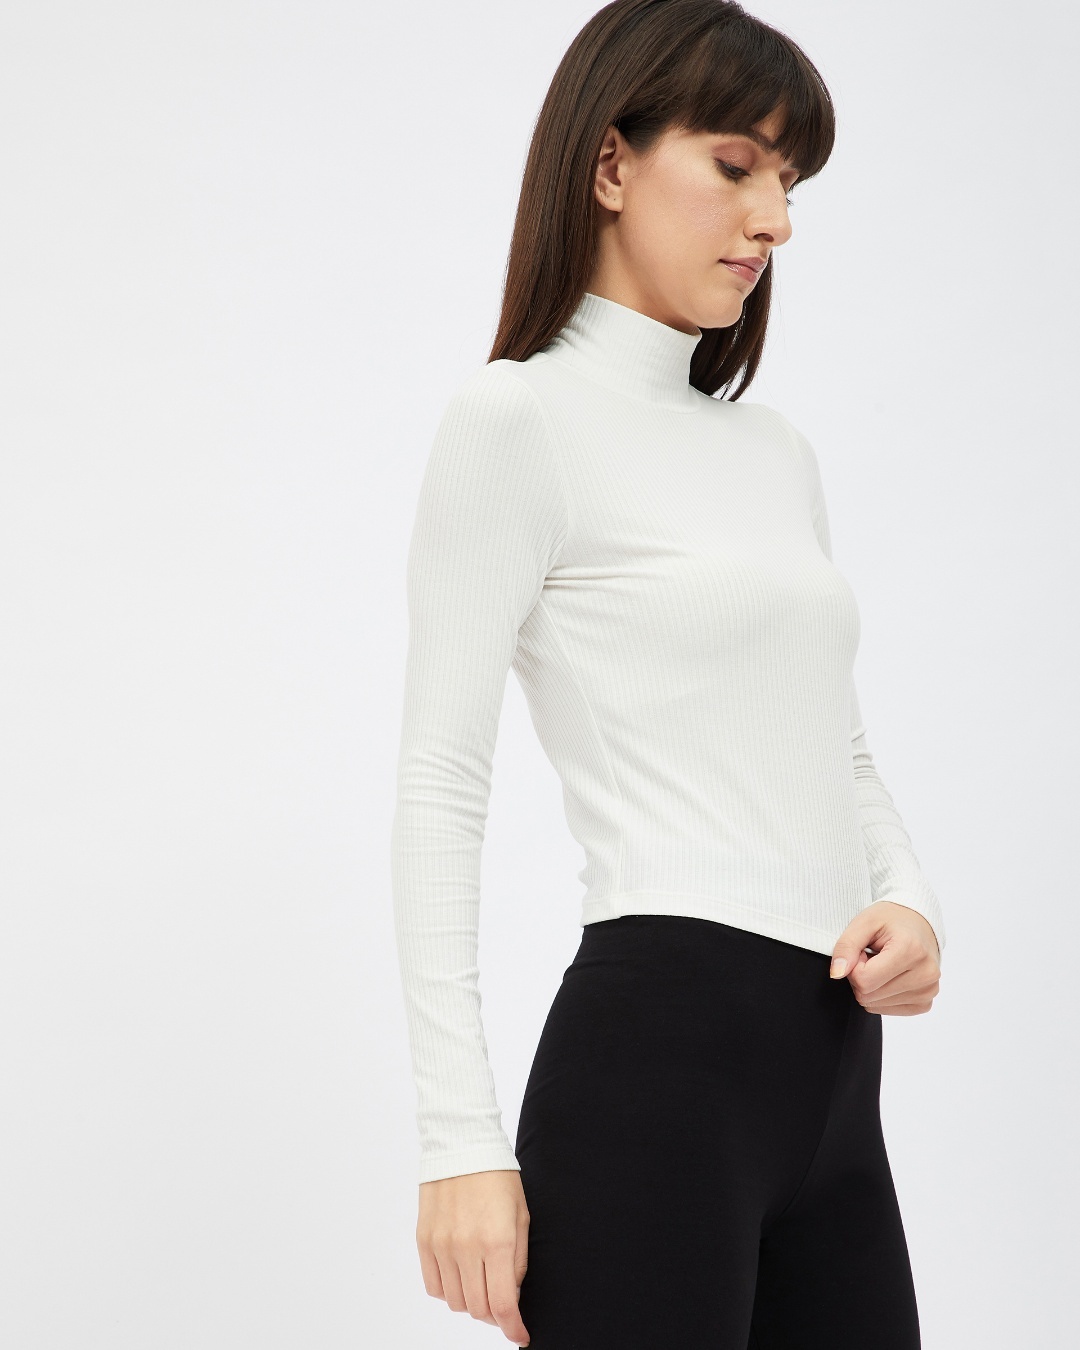 Buy Women's White Full Sleeve Top for Women White Online at Bewakoof